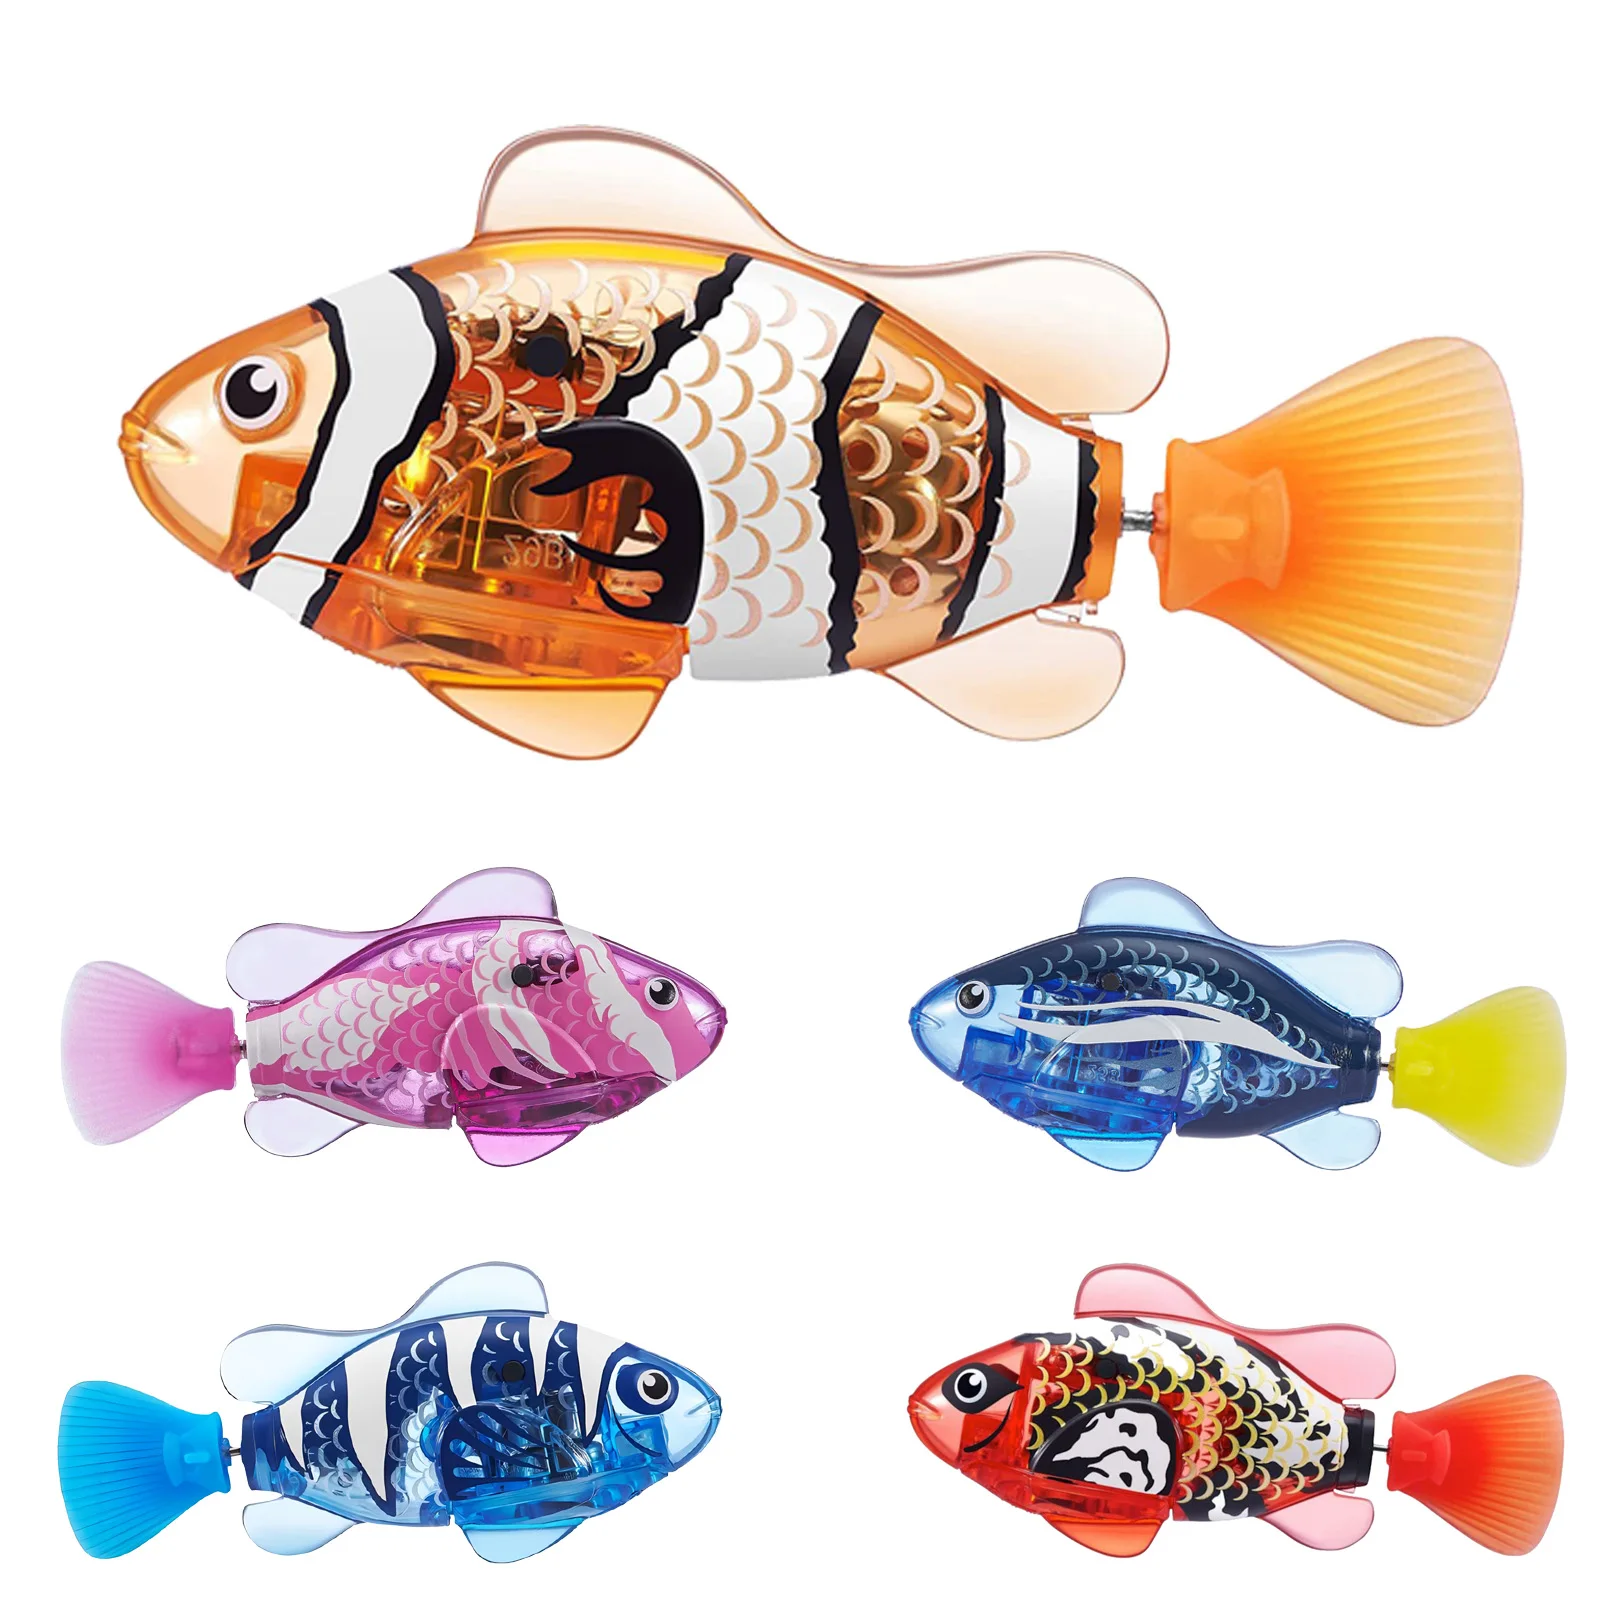 Elektronische Huisdier Vis Elektrische Fishchildren 'S Speelgoed Simulatie Zwemmen Vis Babybadkamer Glow Vis Kat Spelen Met Water Speelgoed Vis